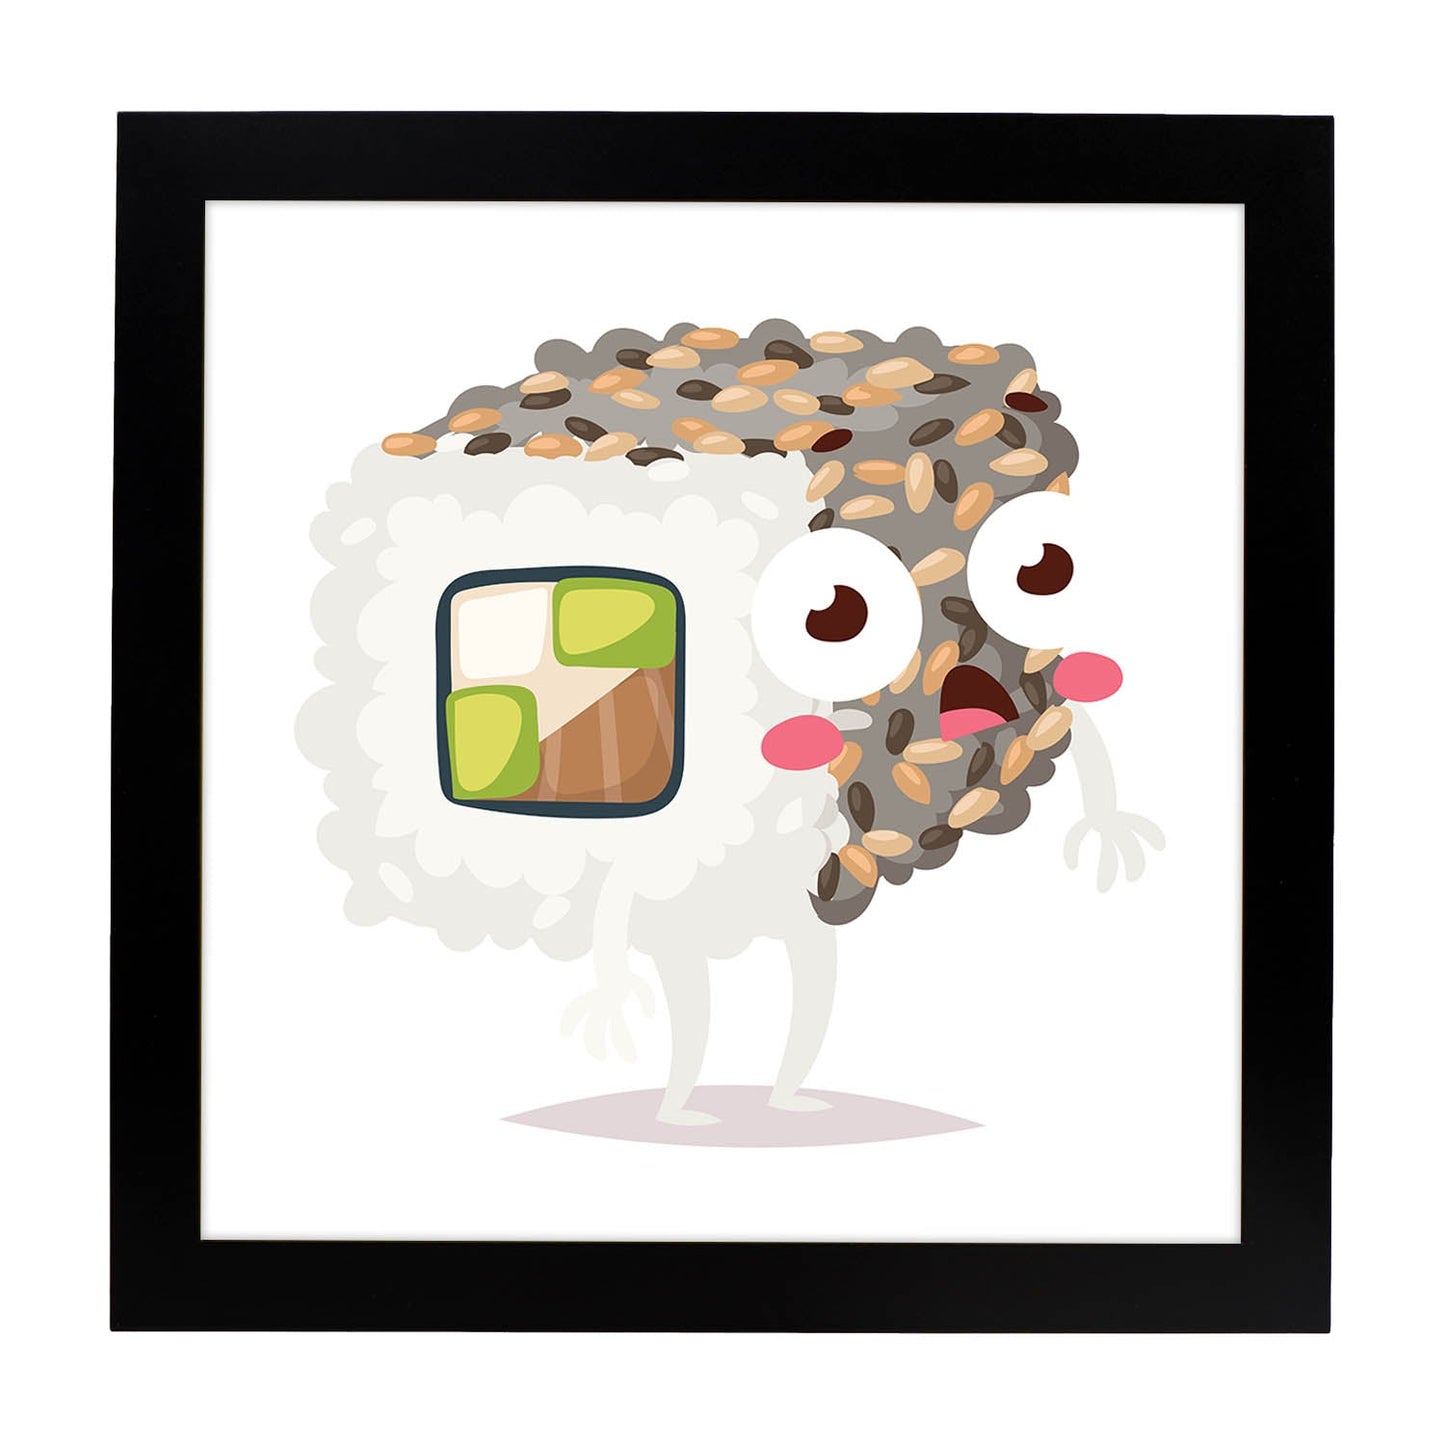 Poster cuadrado de sushi. Lámina Sushi maki california, con dibujos de sushi, onigiri, y otras comidas japonesas.-Artwork-Nacnic-20x20 cm-Marco Negro-Nacnic Estudio SL